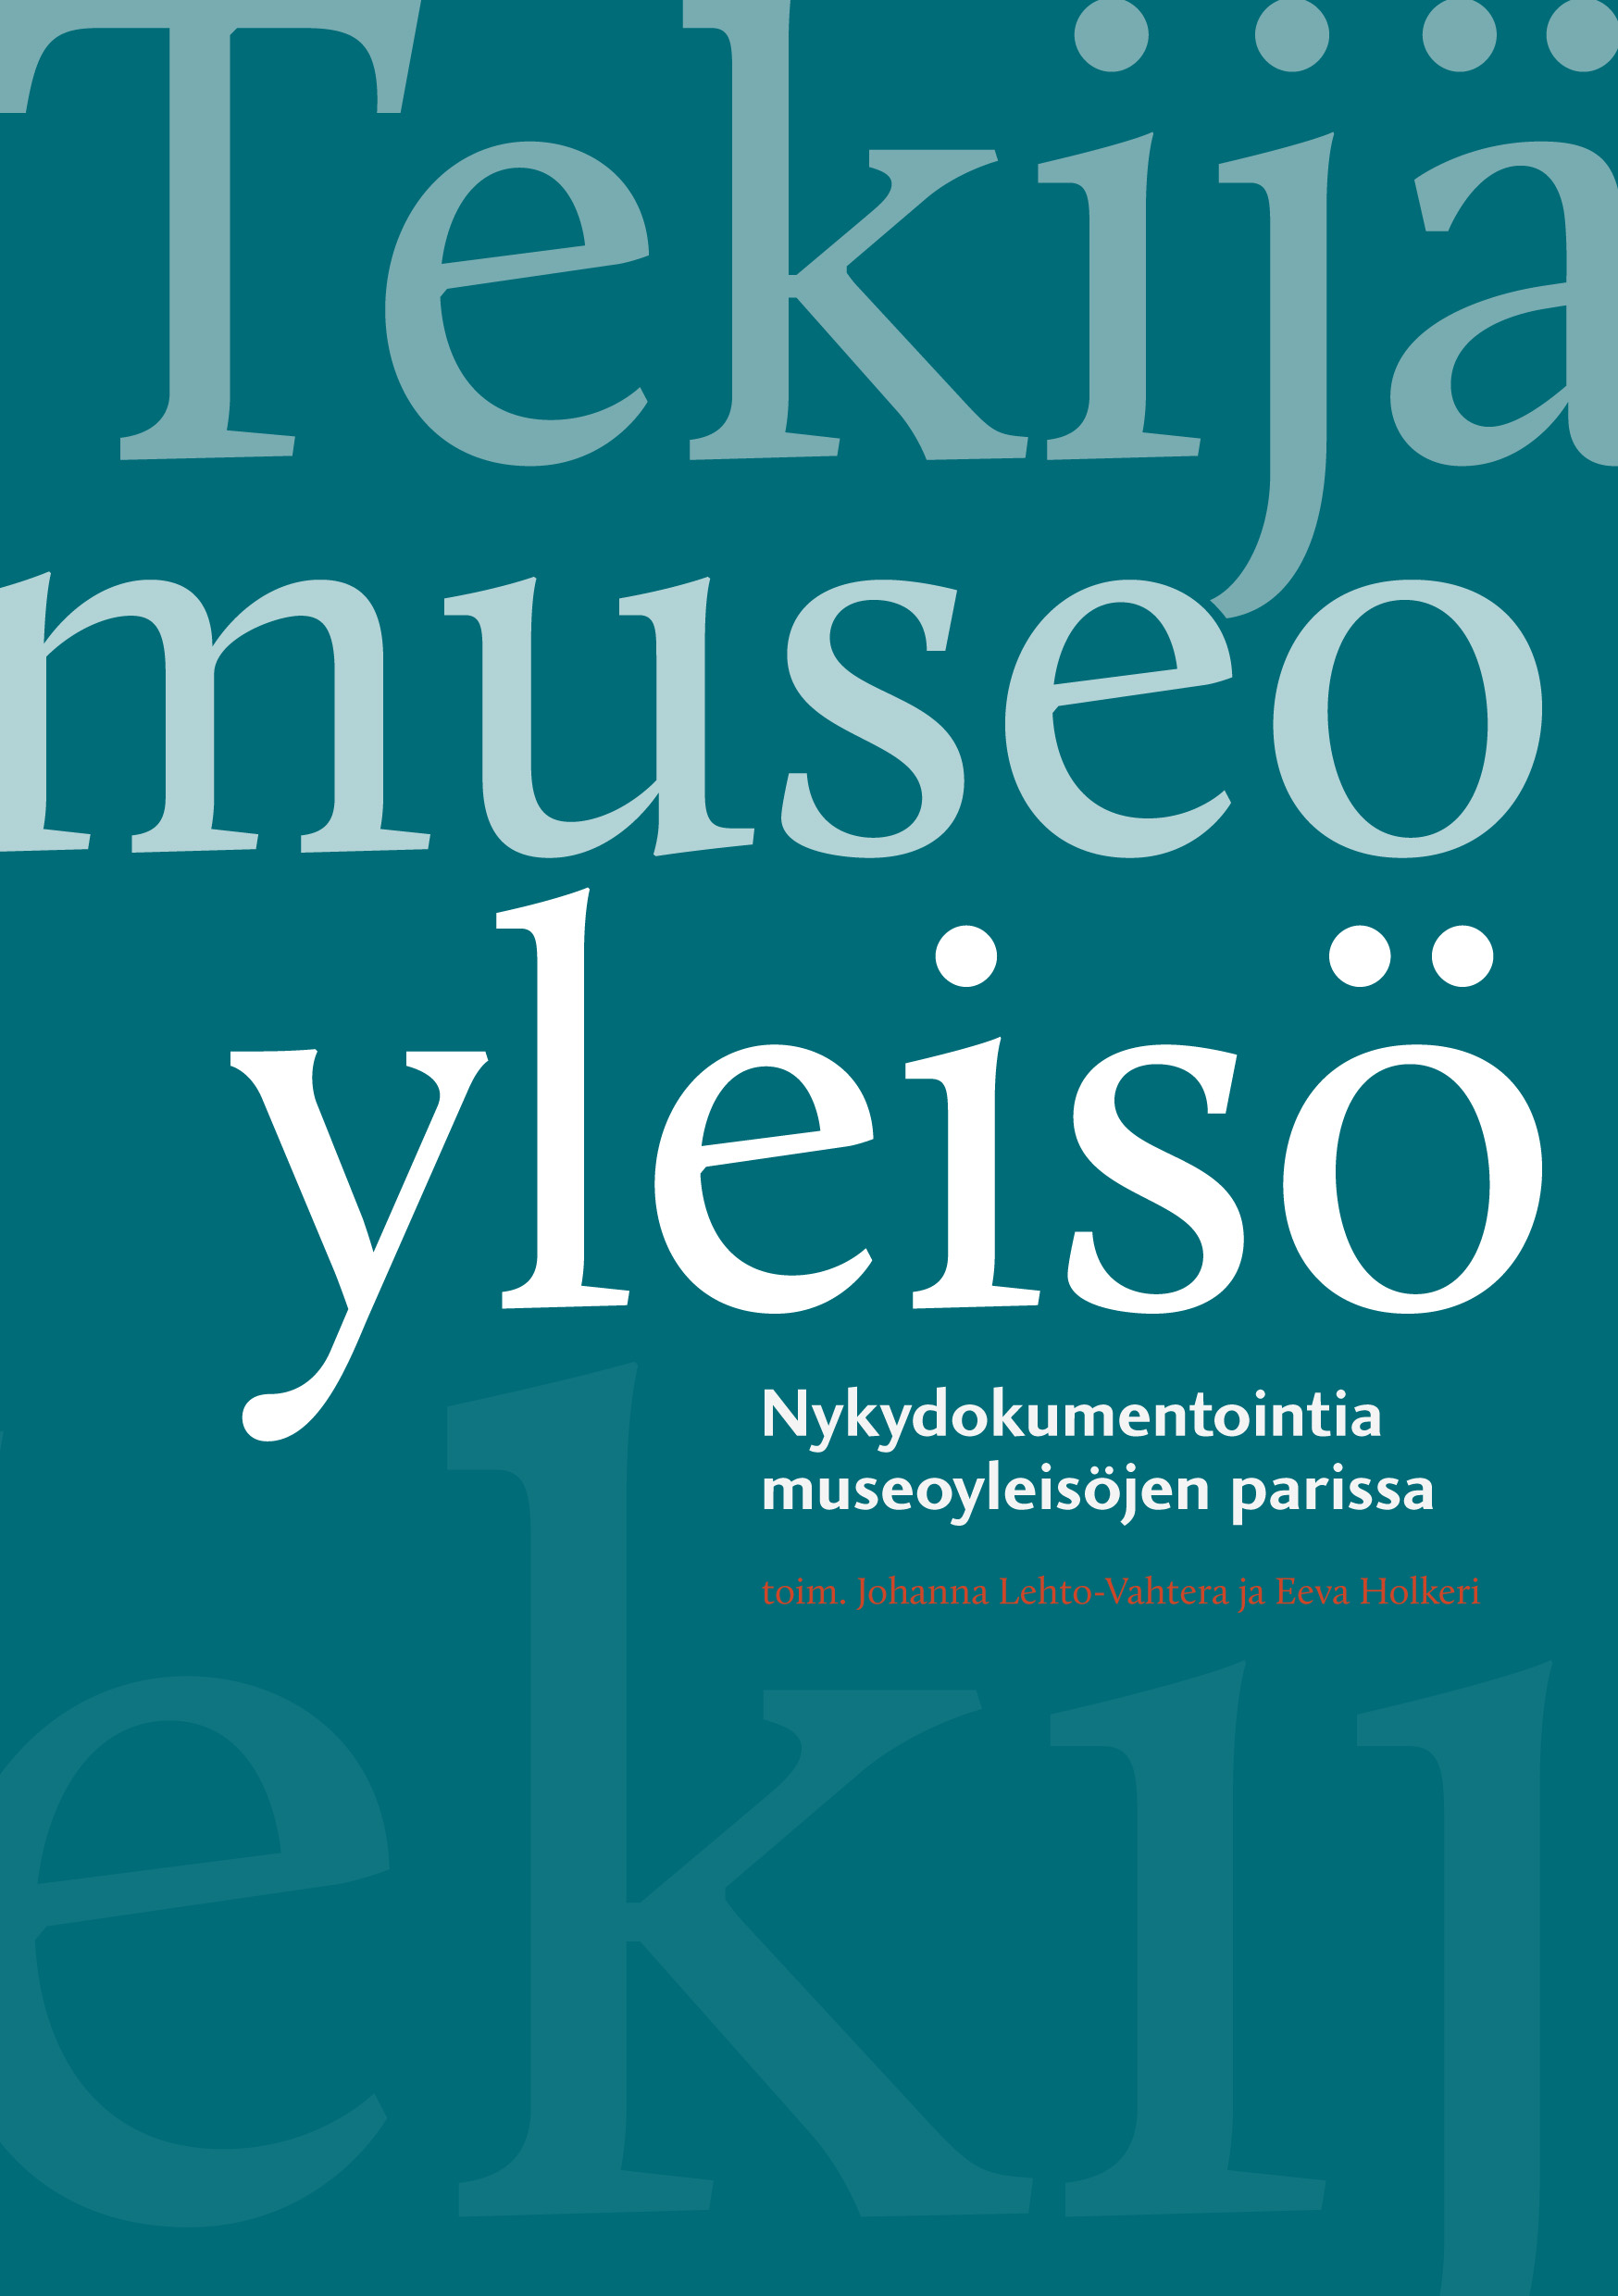 Tekija museo yleiso-1